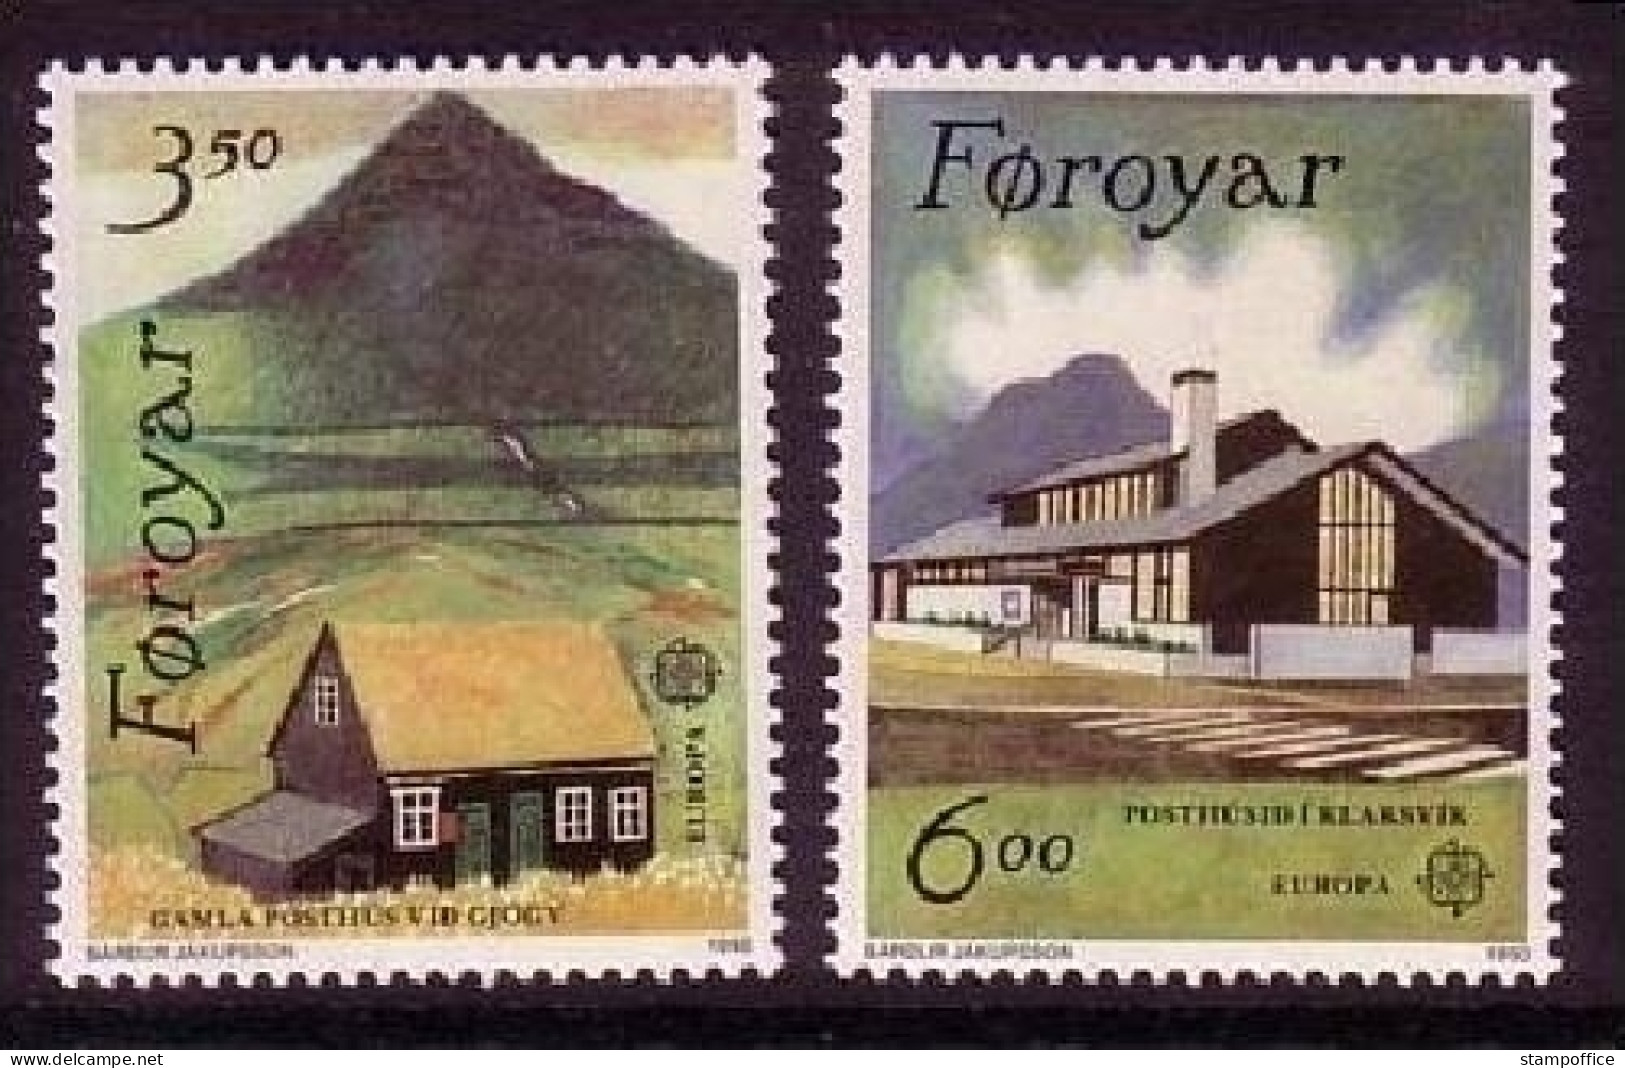 FÄRÖER MI-NR. 198-199 POSTFRISCH(MINT) EUROPA 1990 POSTALISCHE EINRICHTUNGEN - Färöer Inseln